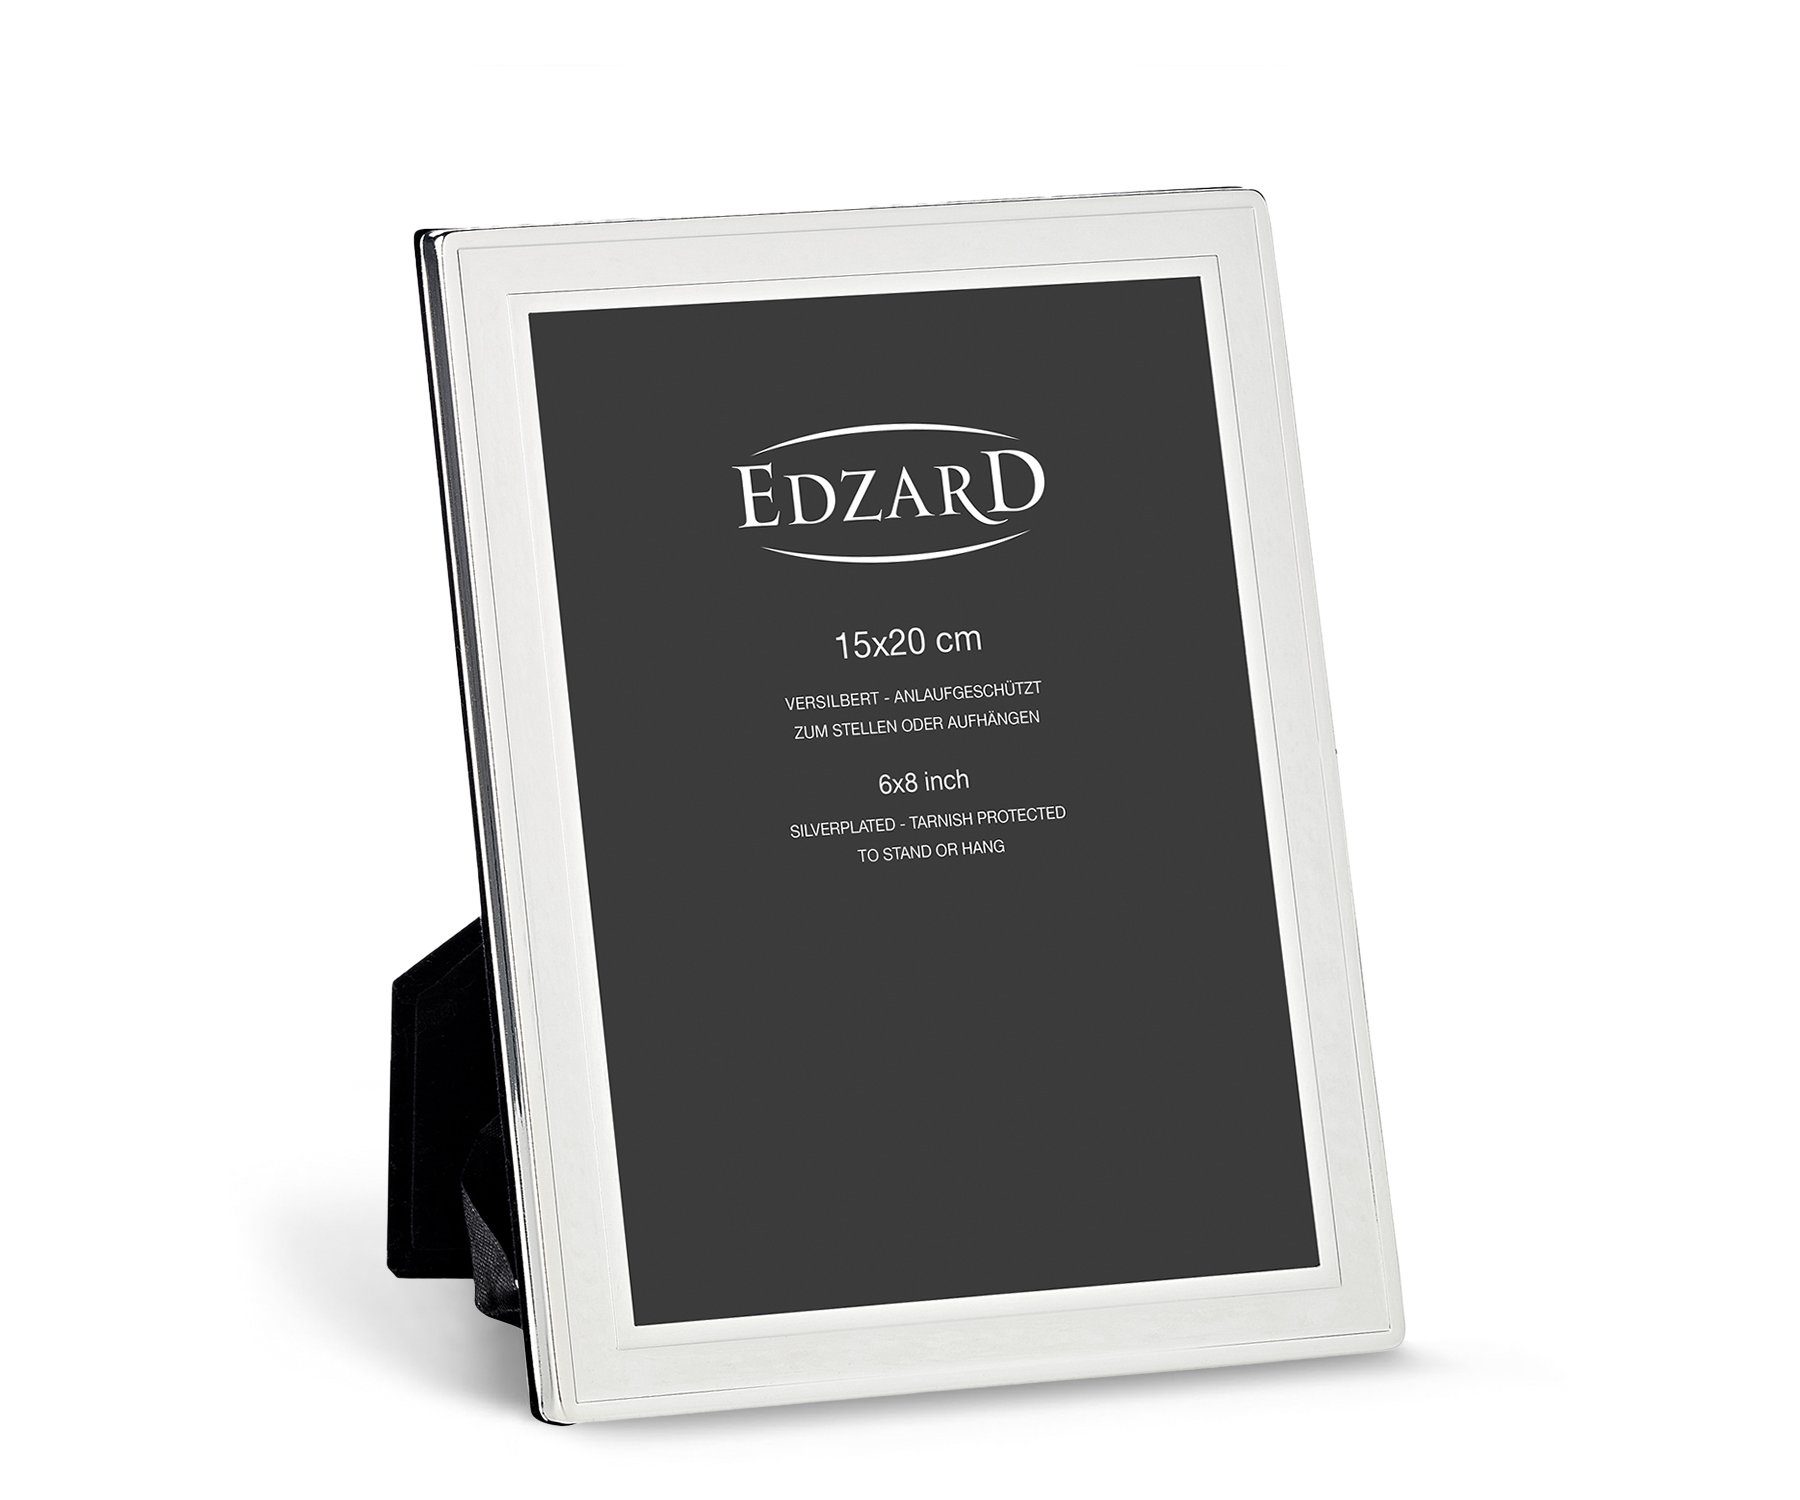 EDZARD für anlaufgeschützt, und Foto versilbert cm Bilderrahmen 15x20 Nardo,